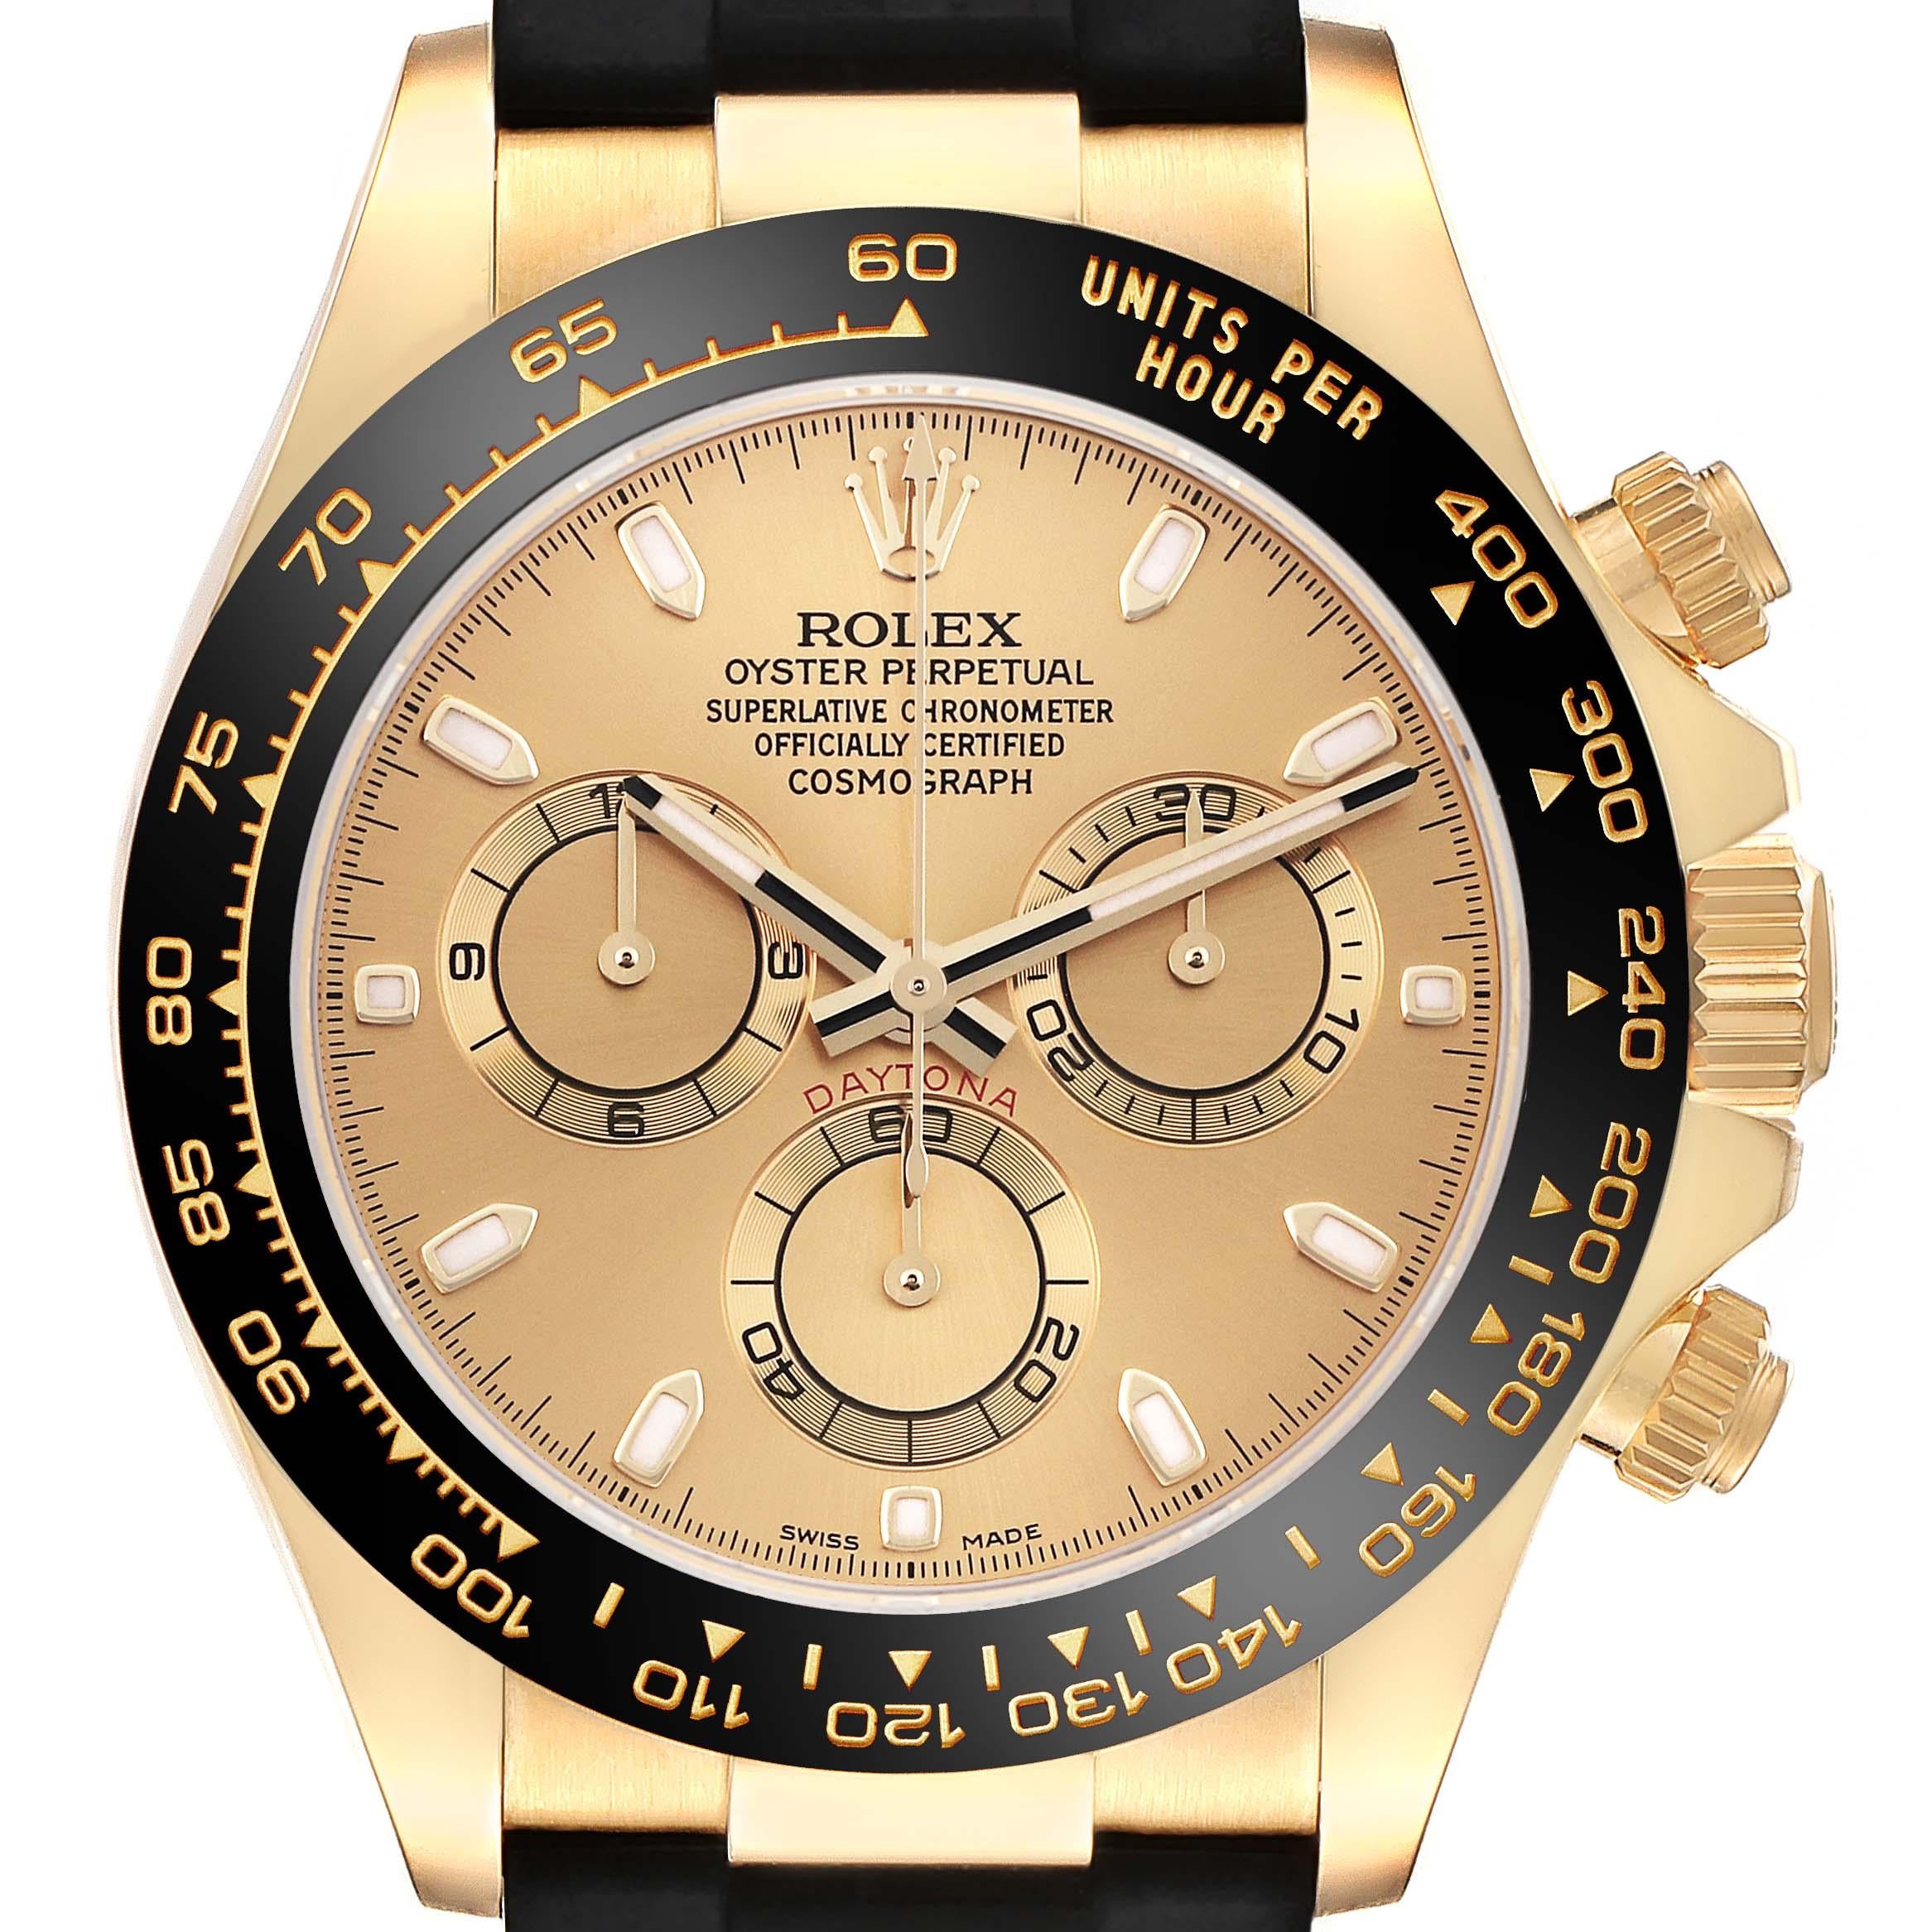 Rolex Daytona Gelbgold Champagner Zifferblatt Herrenuhr 116518 Box Karte. Offiziell zertifiziertes Chronometerwerk mit automatischem Aufzug. Chronographenfunktion. Gehäuse aus 18 Karat Gelbgold mit einem Durchmesser von 40,0 mm.  Spezielle